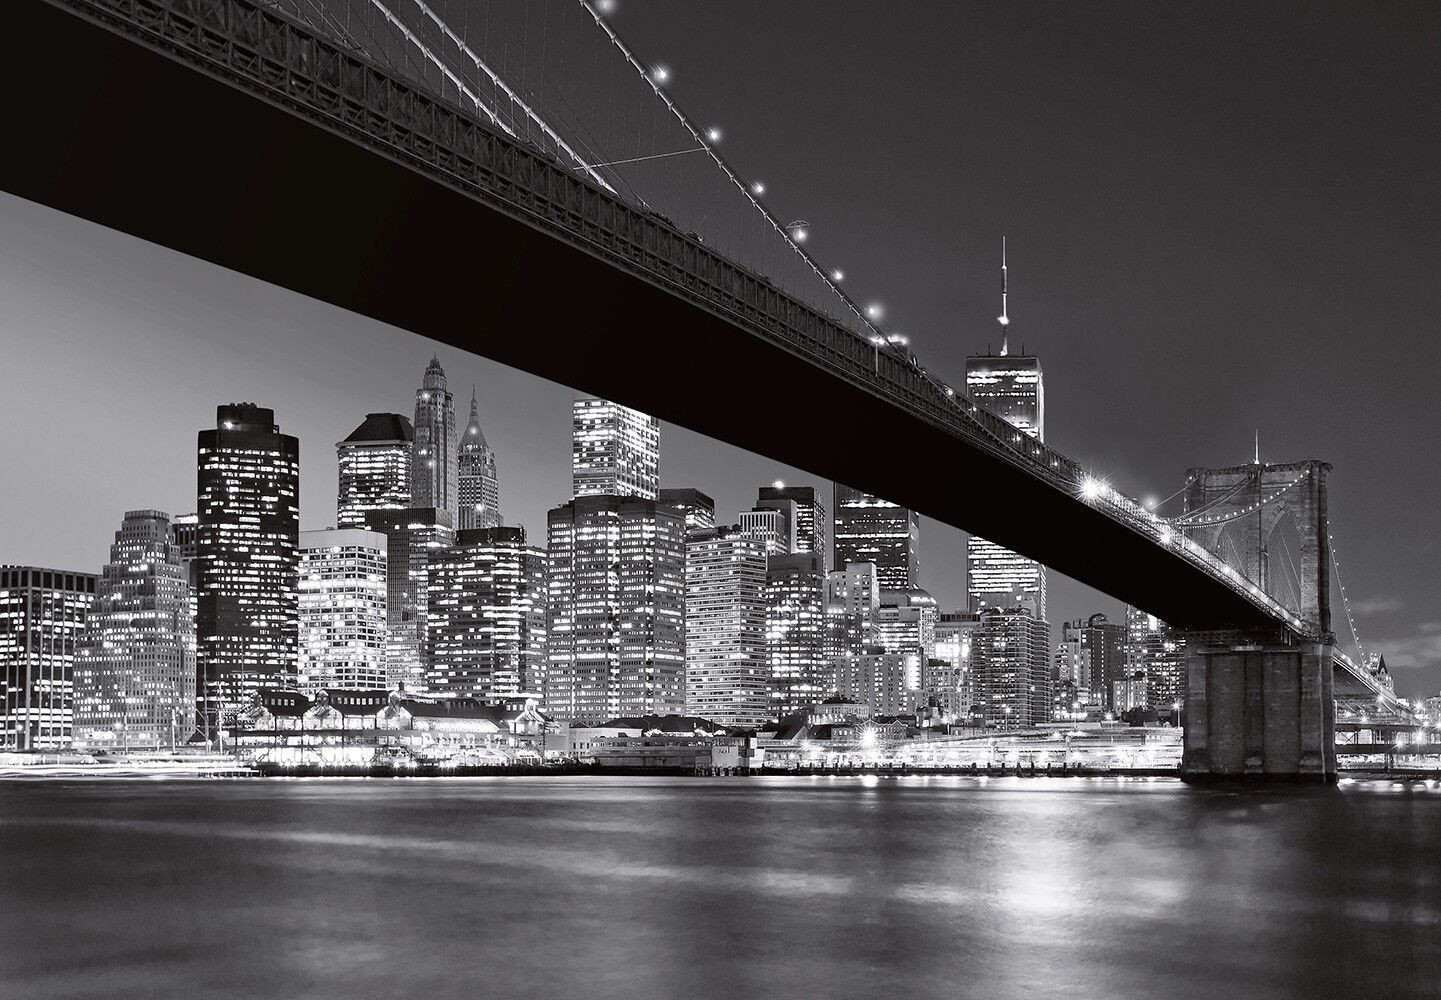 Картинка город черно белая. Бруклинский мост Нью-Йорк. Картина Нью-Йорк Бруклинский мост. Бруклинский мост Нью-Йорк фотообои. Нью-Йорк Сити Манхэттен черно белый.